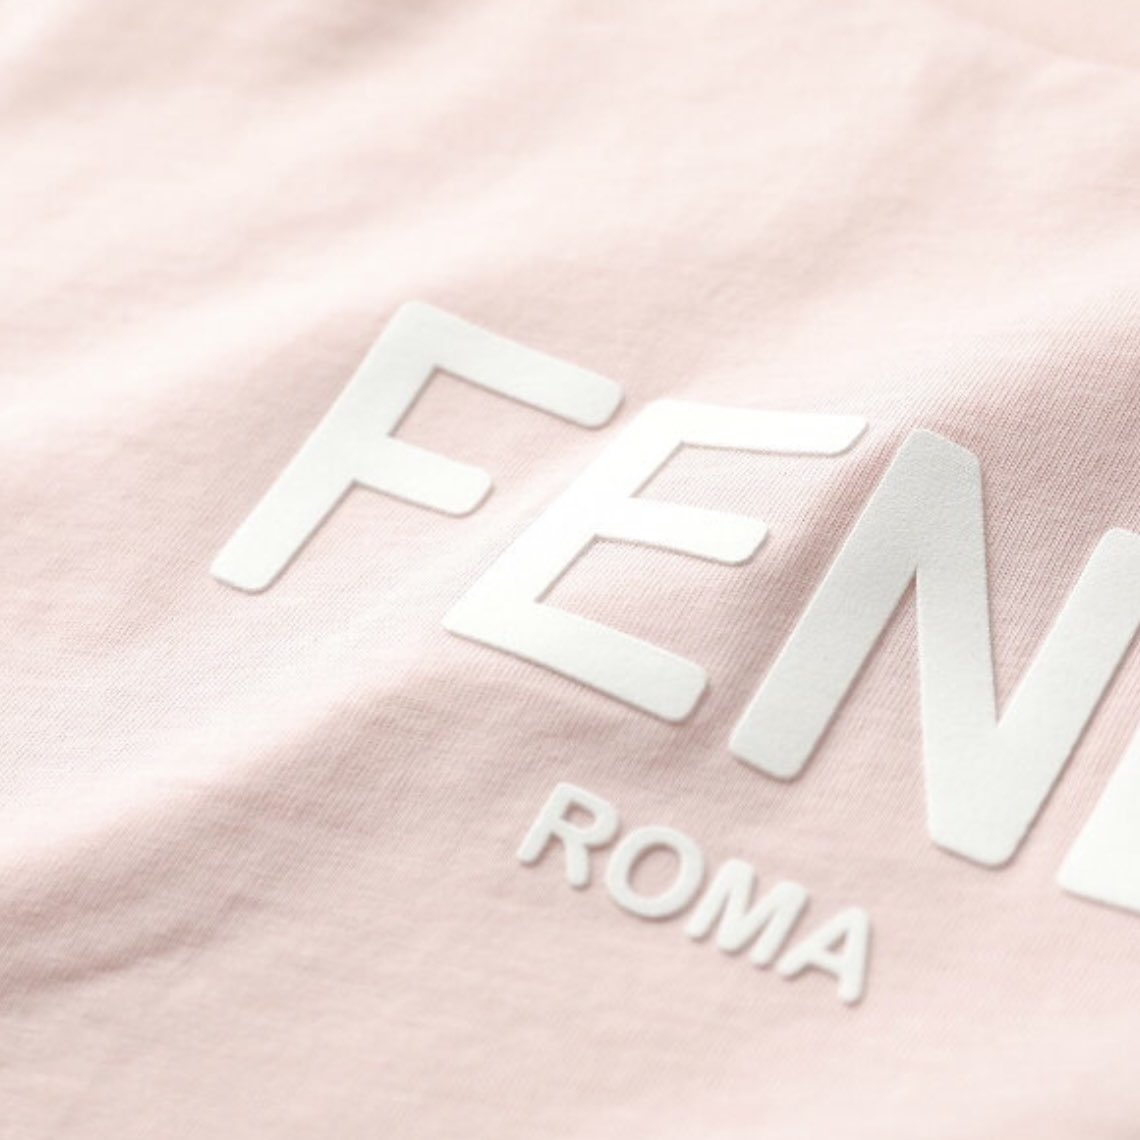 フェンディのピンクのTシャツぷくっとしたホワイトロゴの組み合わせかわいいな🎀